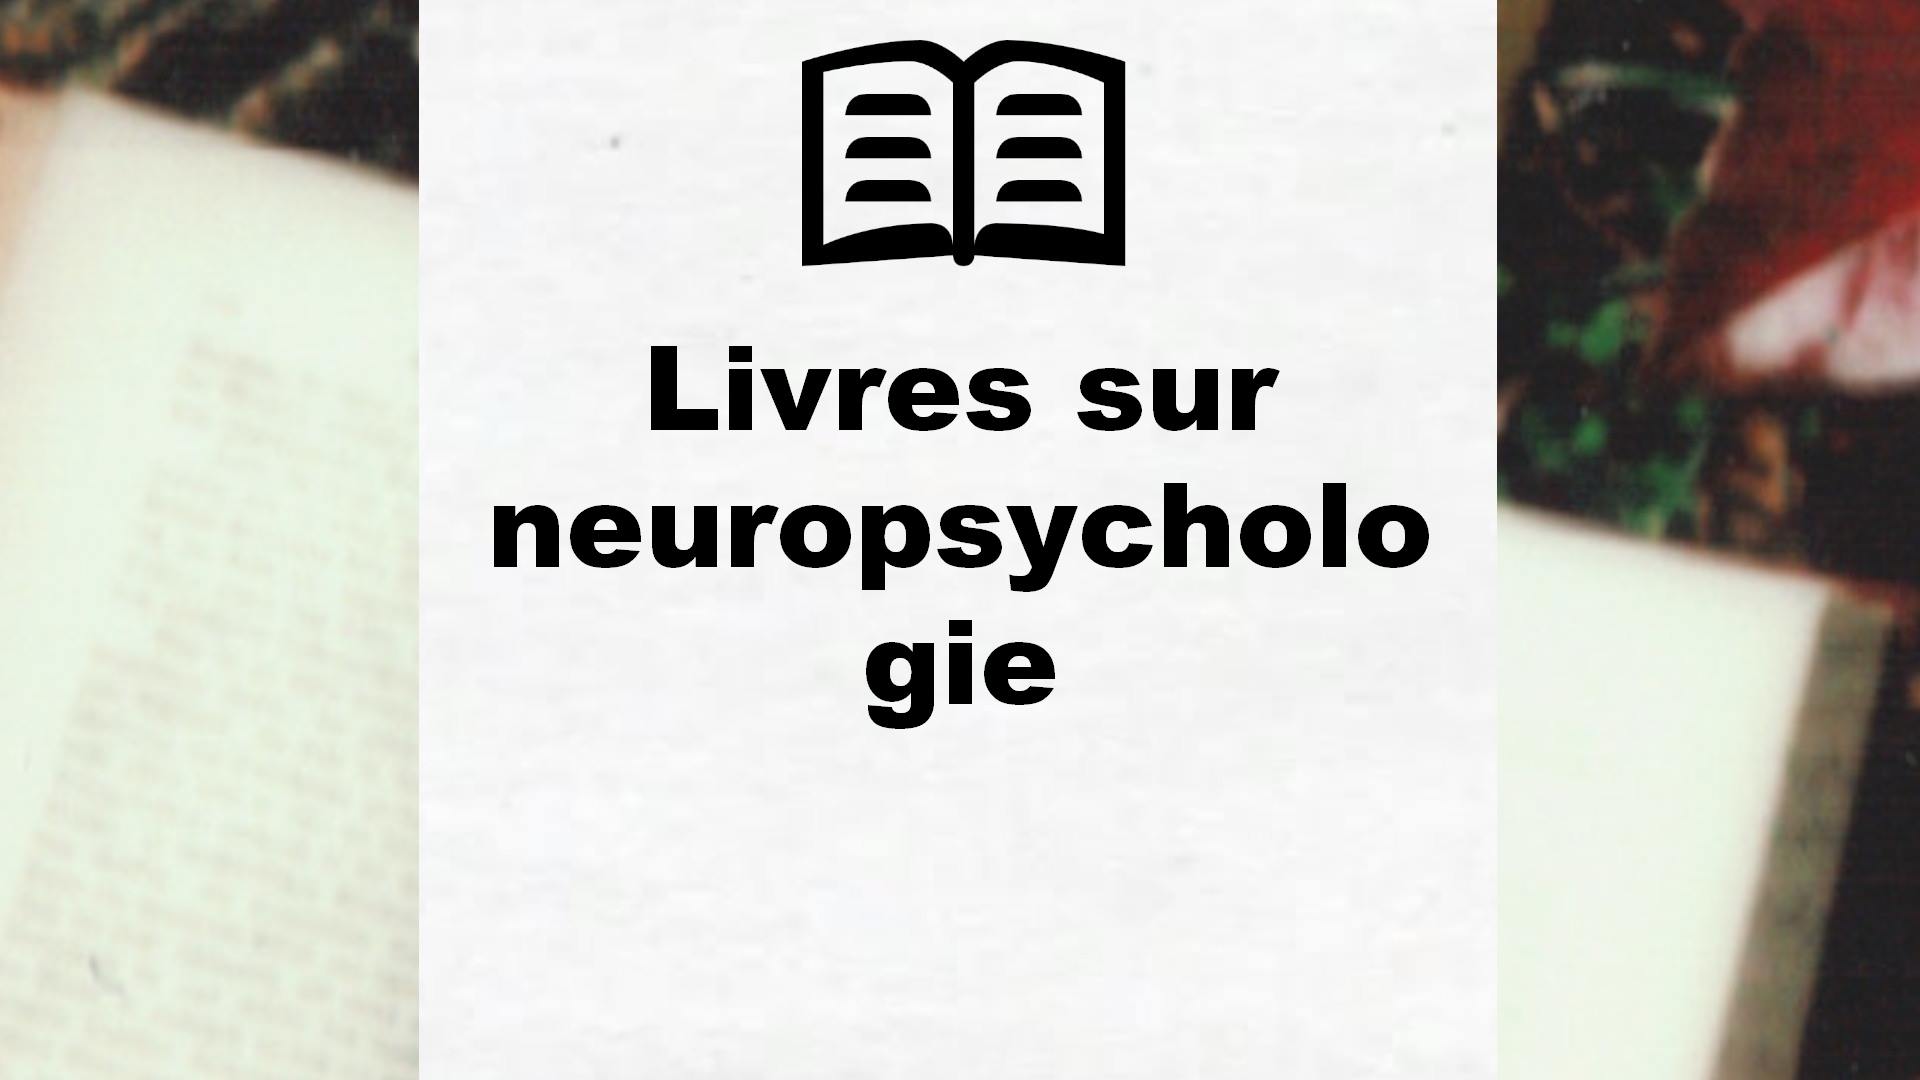 Livres sur neuropsychologie